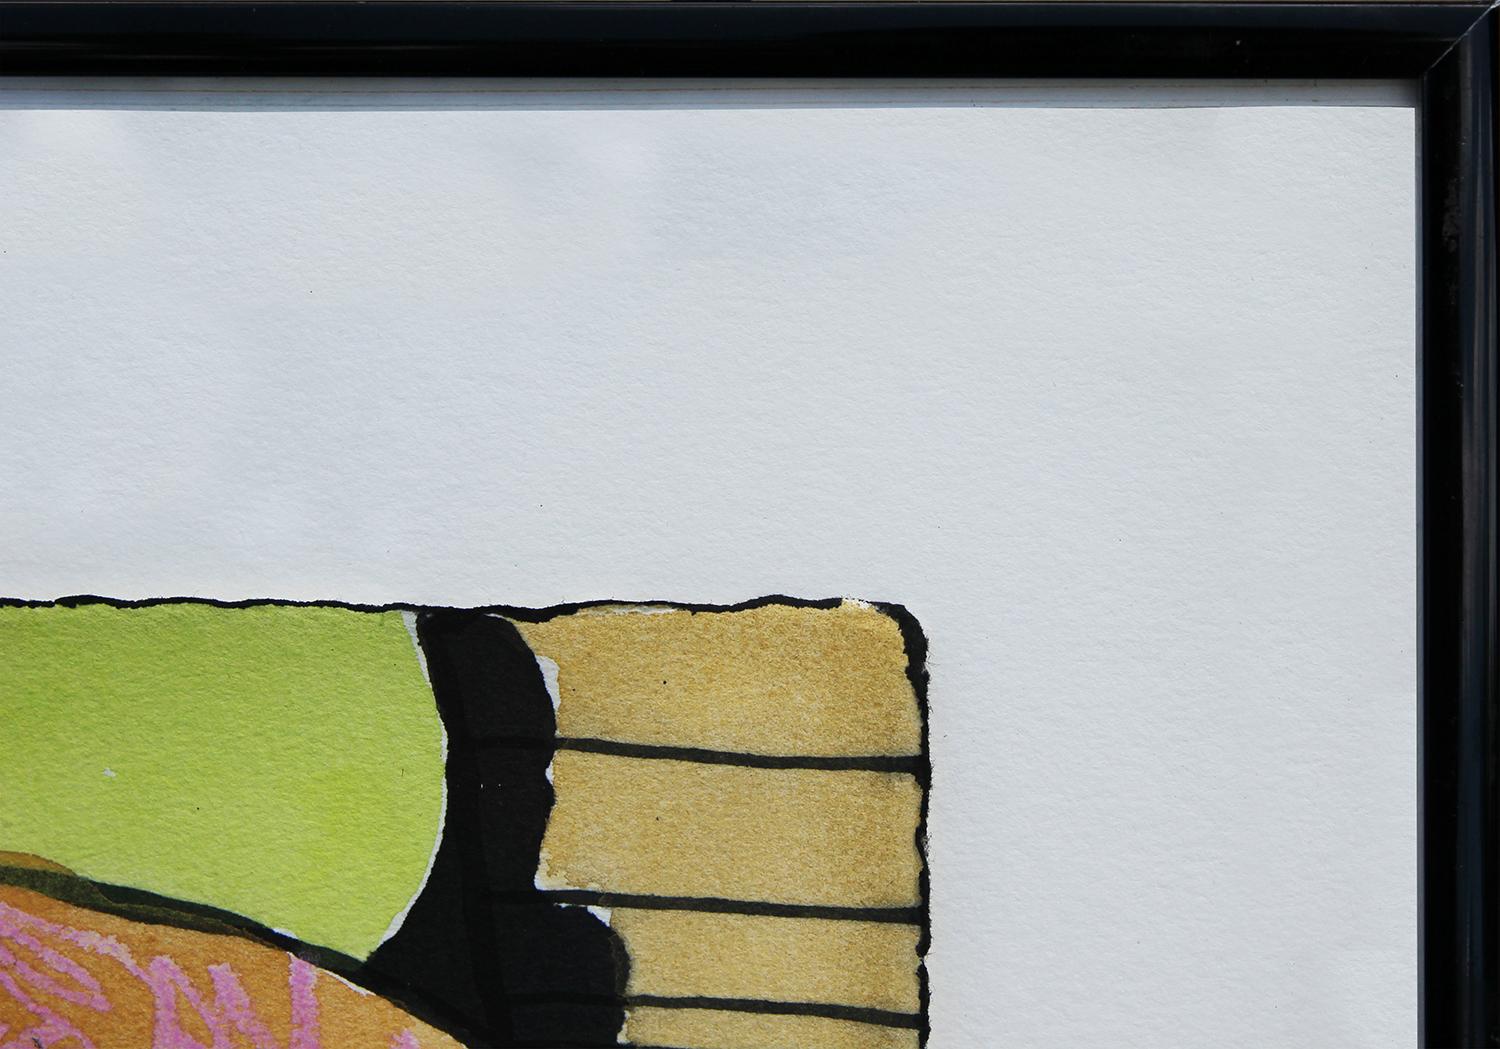 Buntes geometrisches abstraktes Mixed-Media-Gemälde des modernen Künstlers Don Shaw. Das Werk zeigt primäre farbige Formen, die mit einer kauernden rosa Figur verflochten sind. Signiert und datiert in der rechten unteren Ecke der Vorderseite.